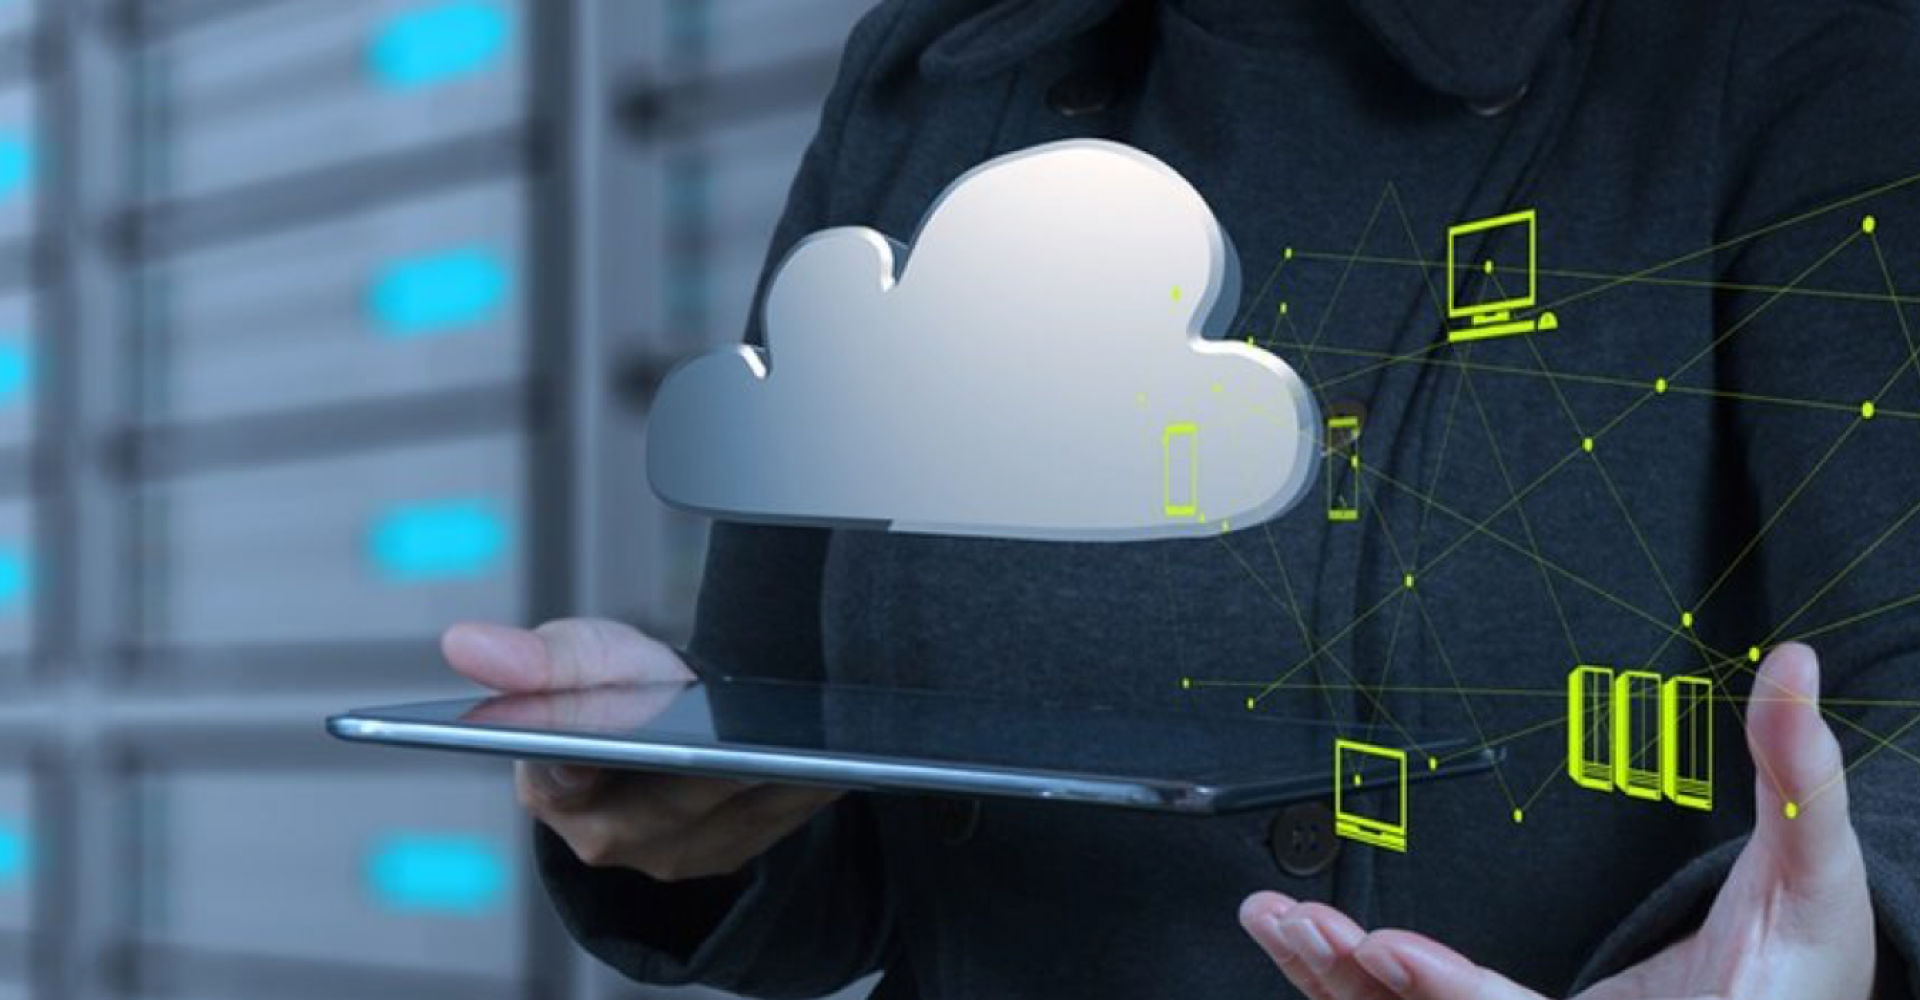 4 Mitos sobre o Cloud Computing